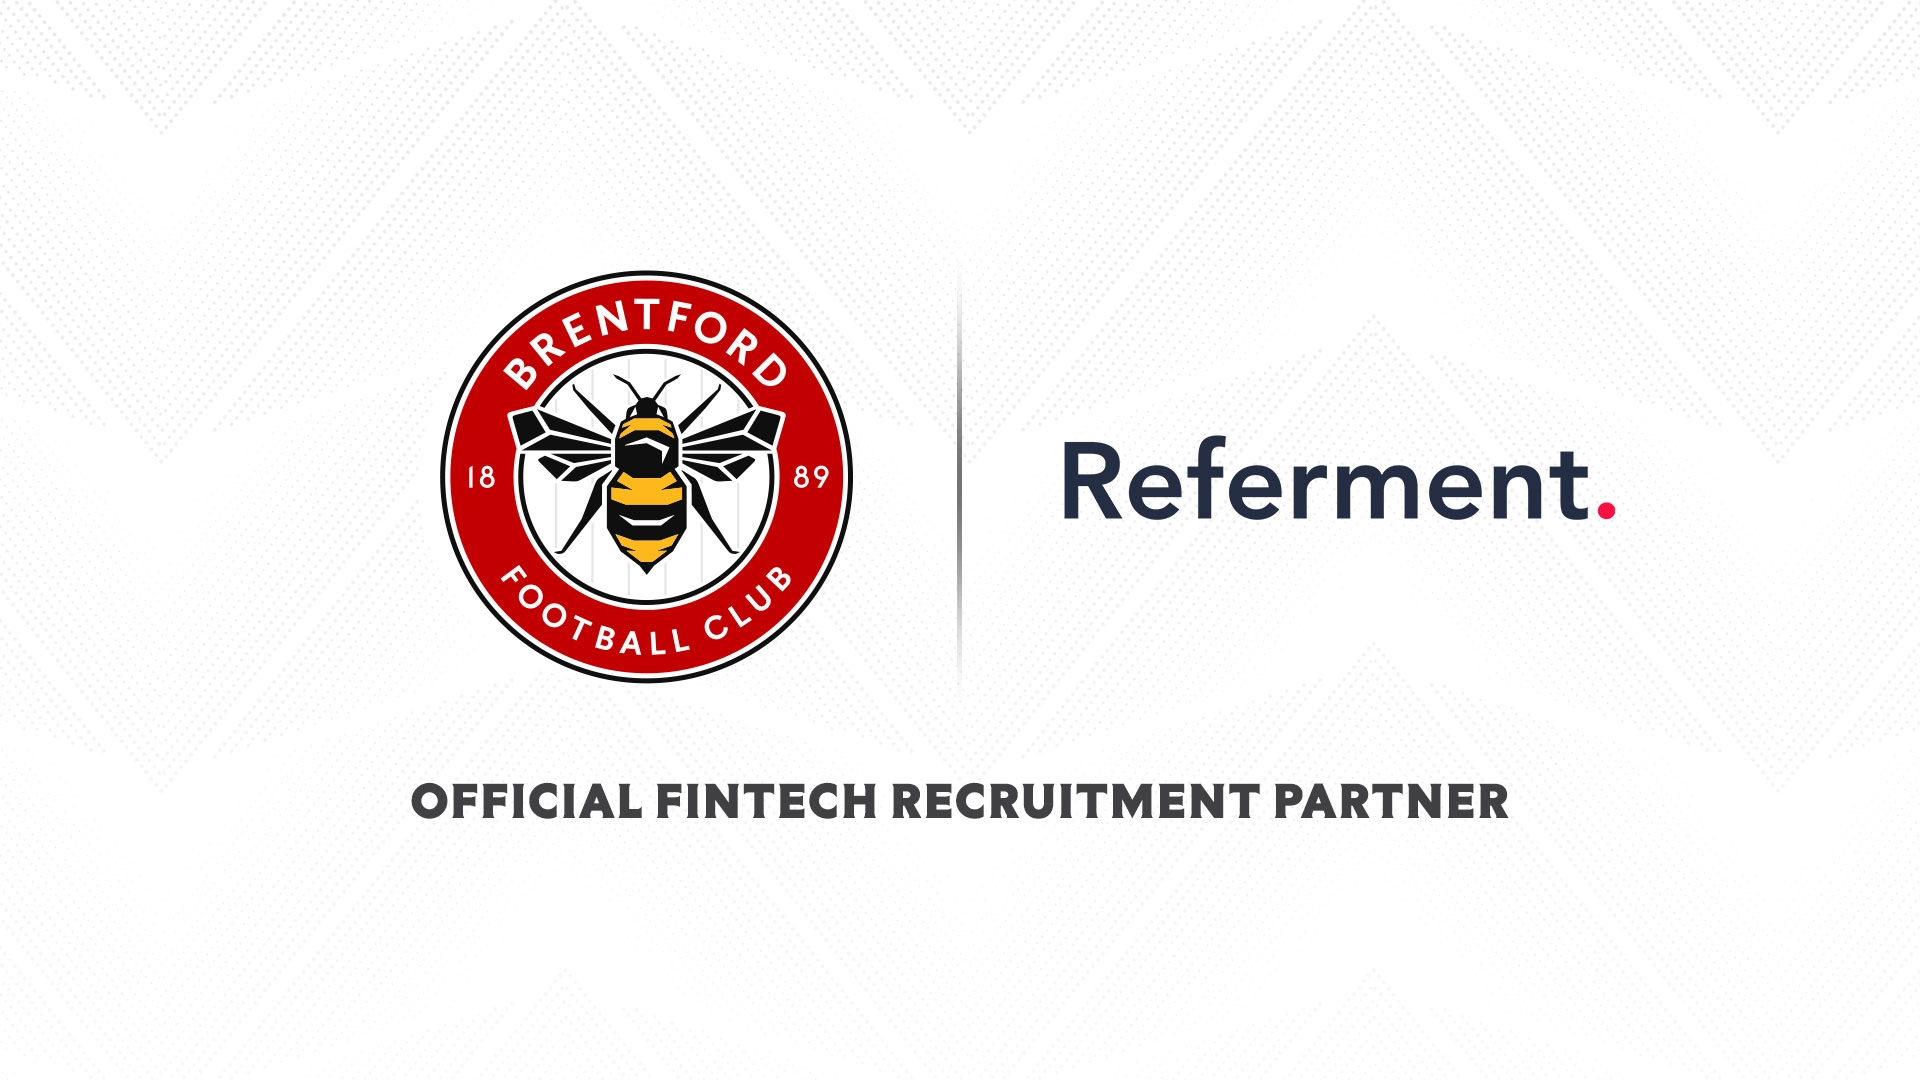 Official FinTech Recruitment Partners of Brentford FC